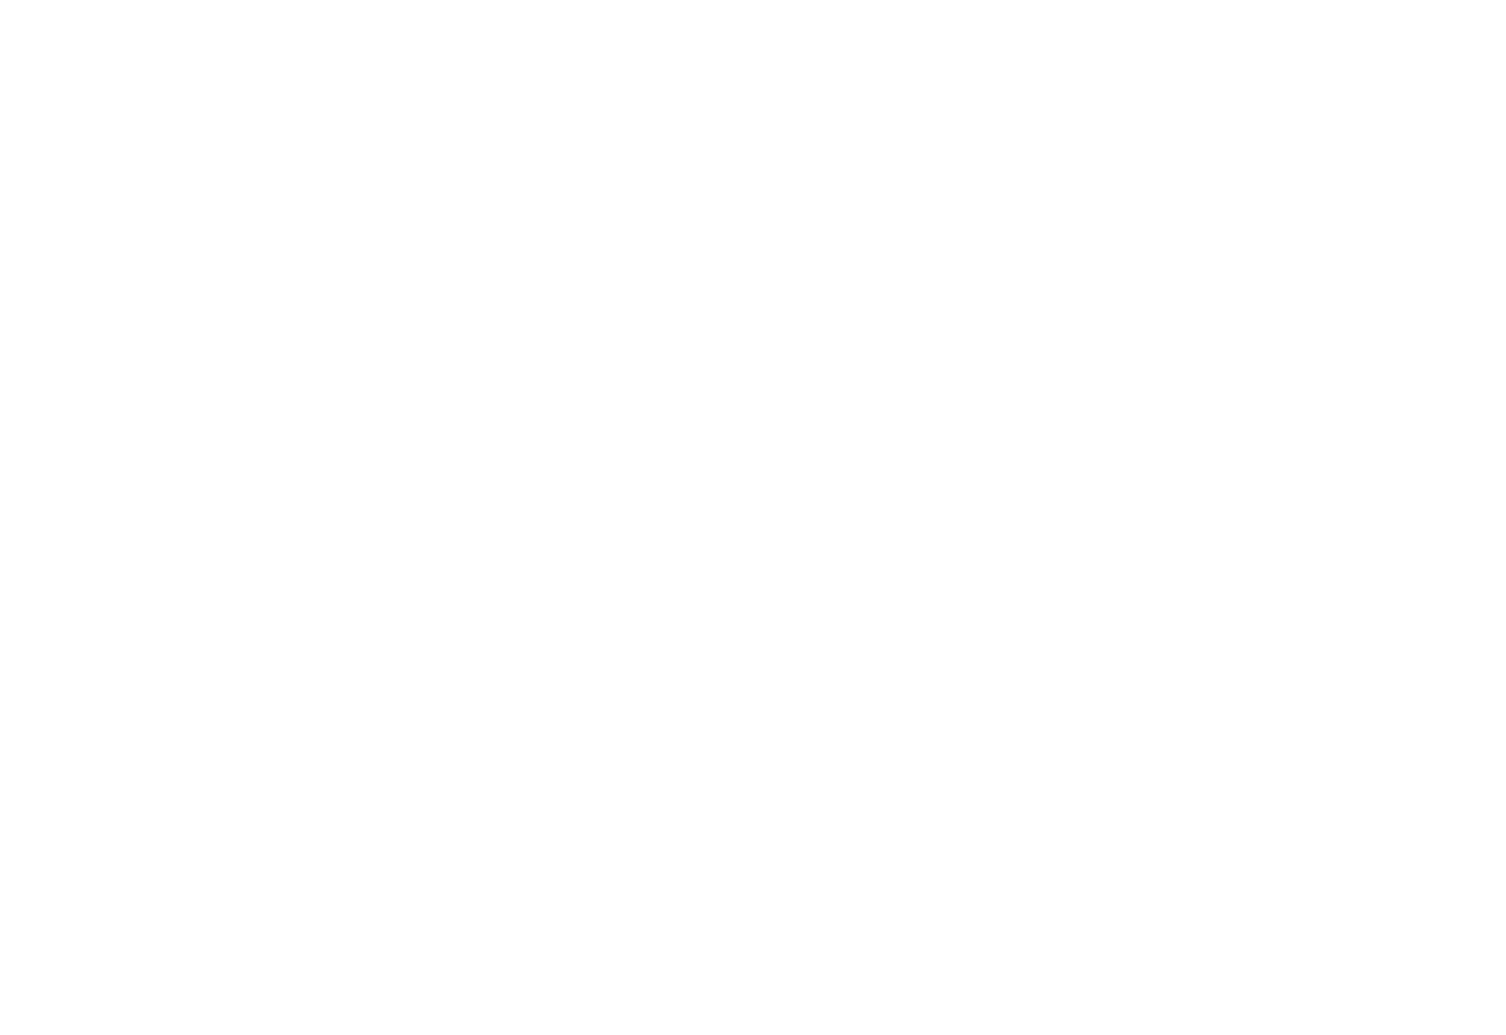 Logitech logo for dark backgrounds (transparent PNG)